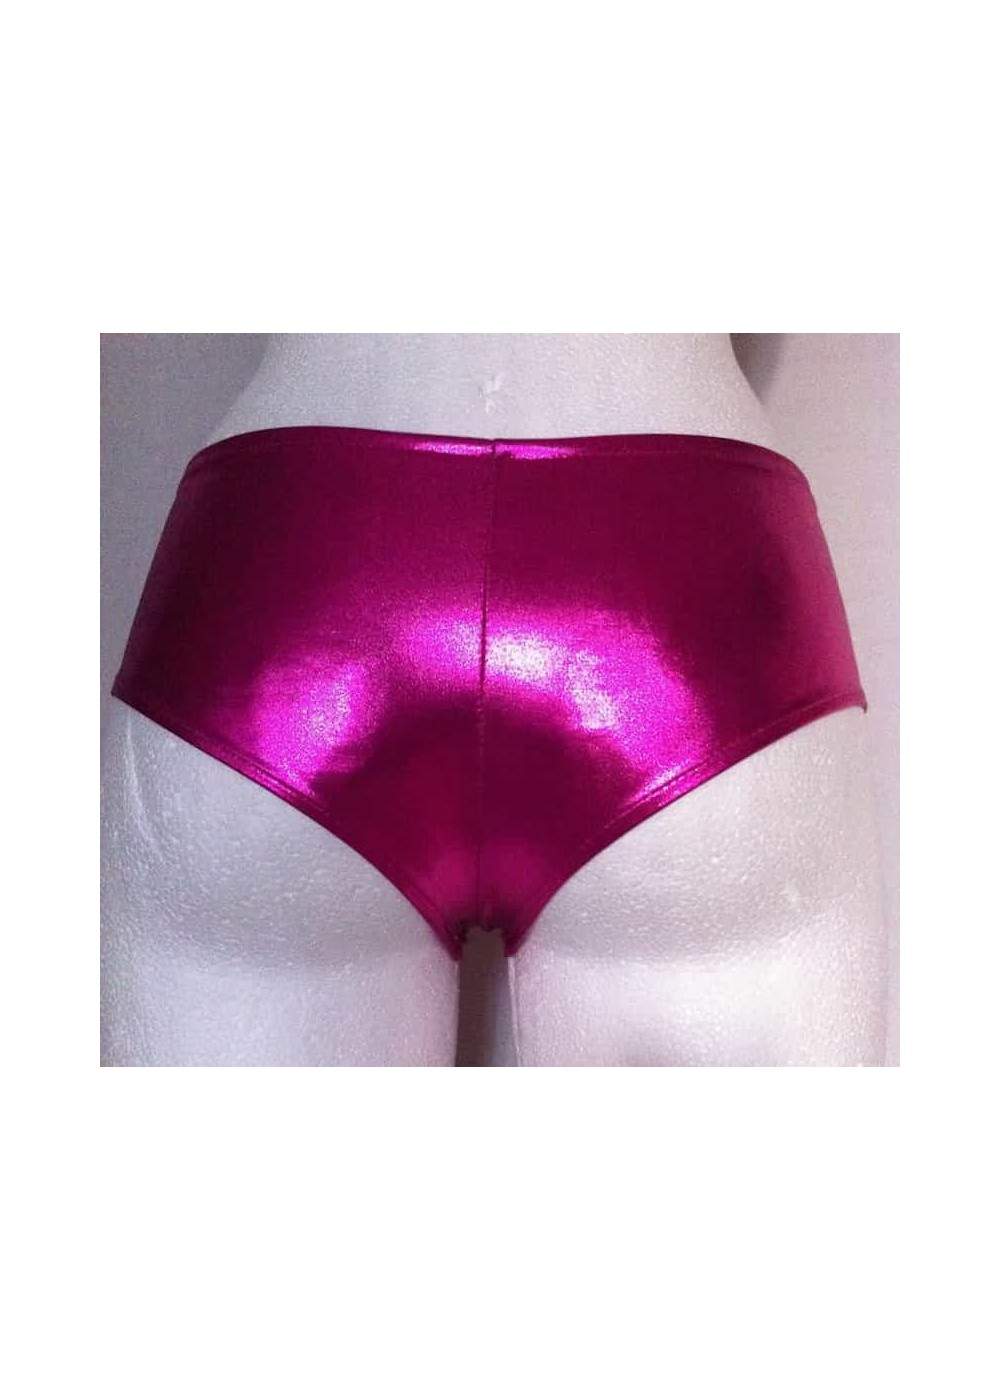 Pantalones calientes de cuero óptico rosa metalizado Tallas 34 - 42 - 